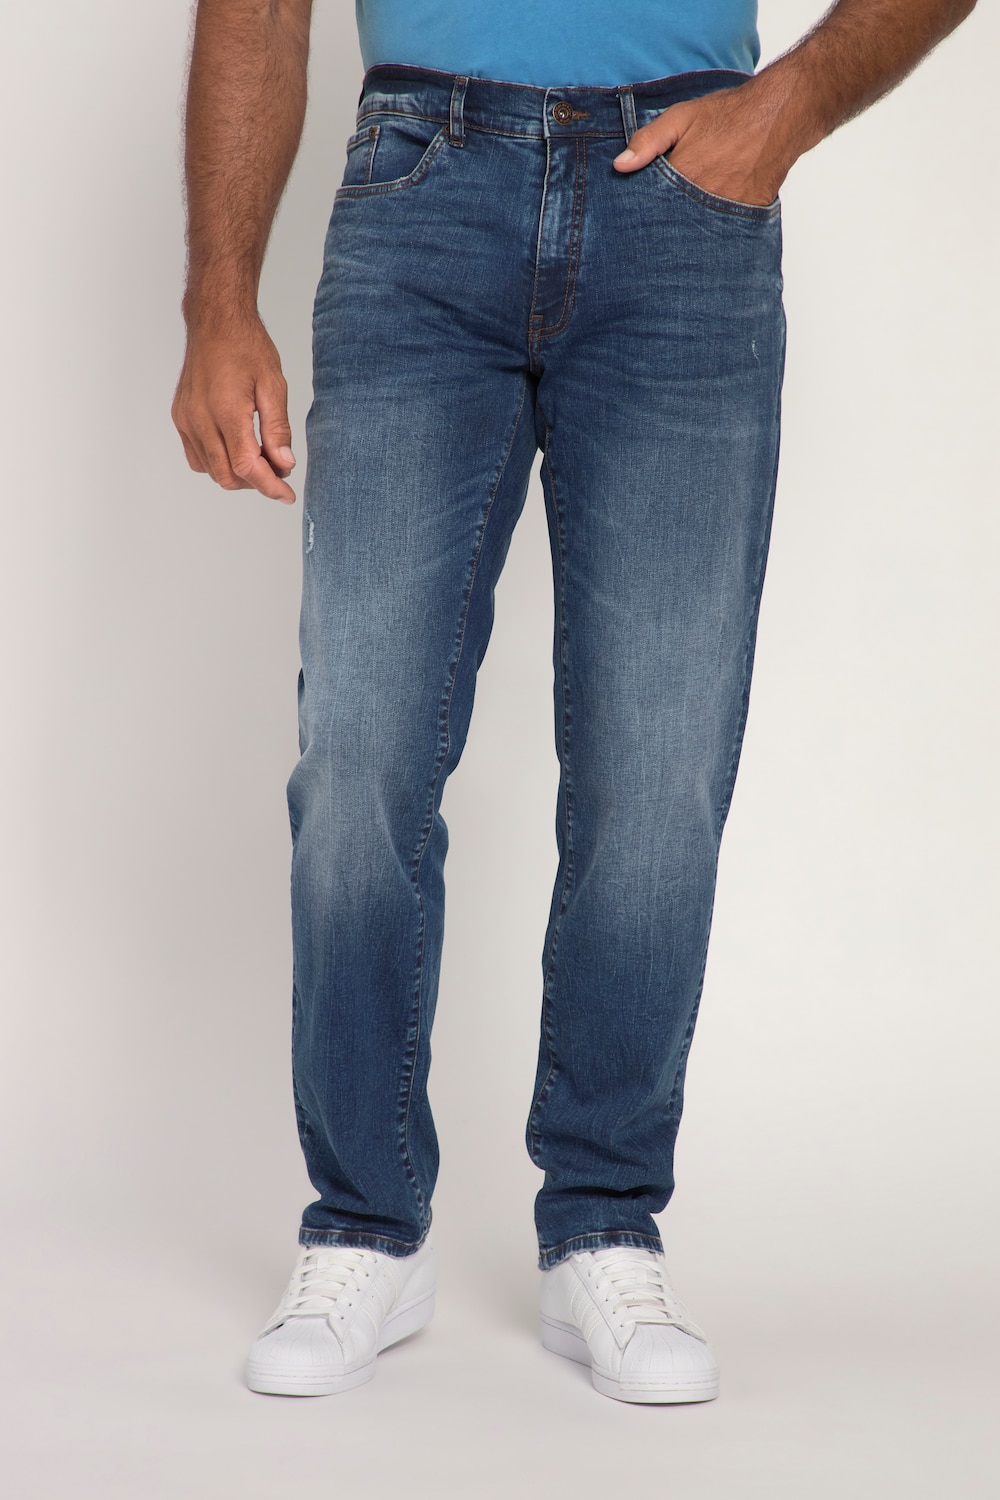 Grote Maten jeans, Heren, blauw, Maat: 52, Katoen, JP1880